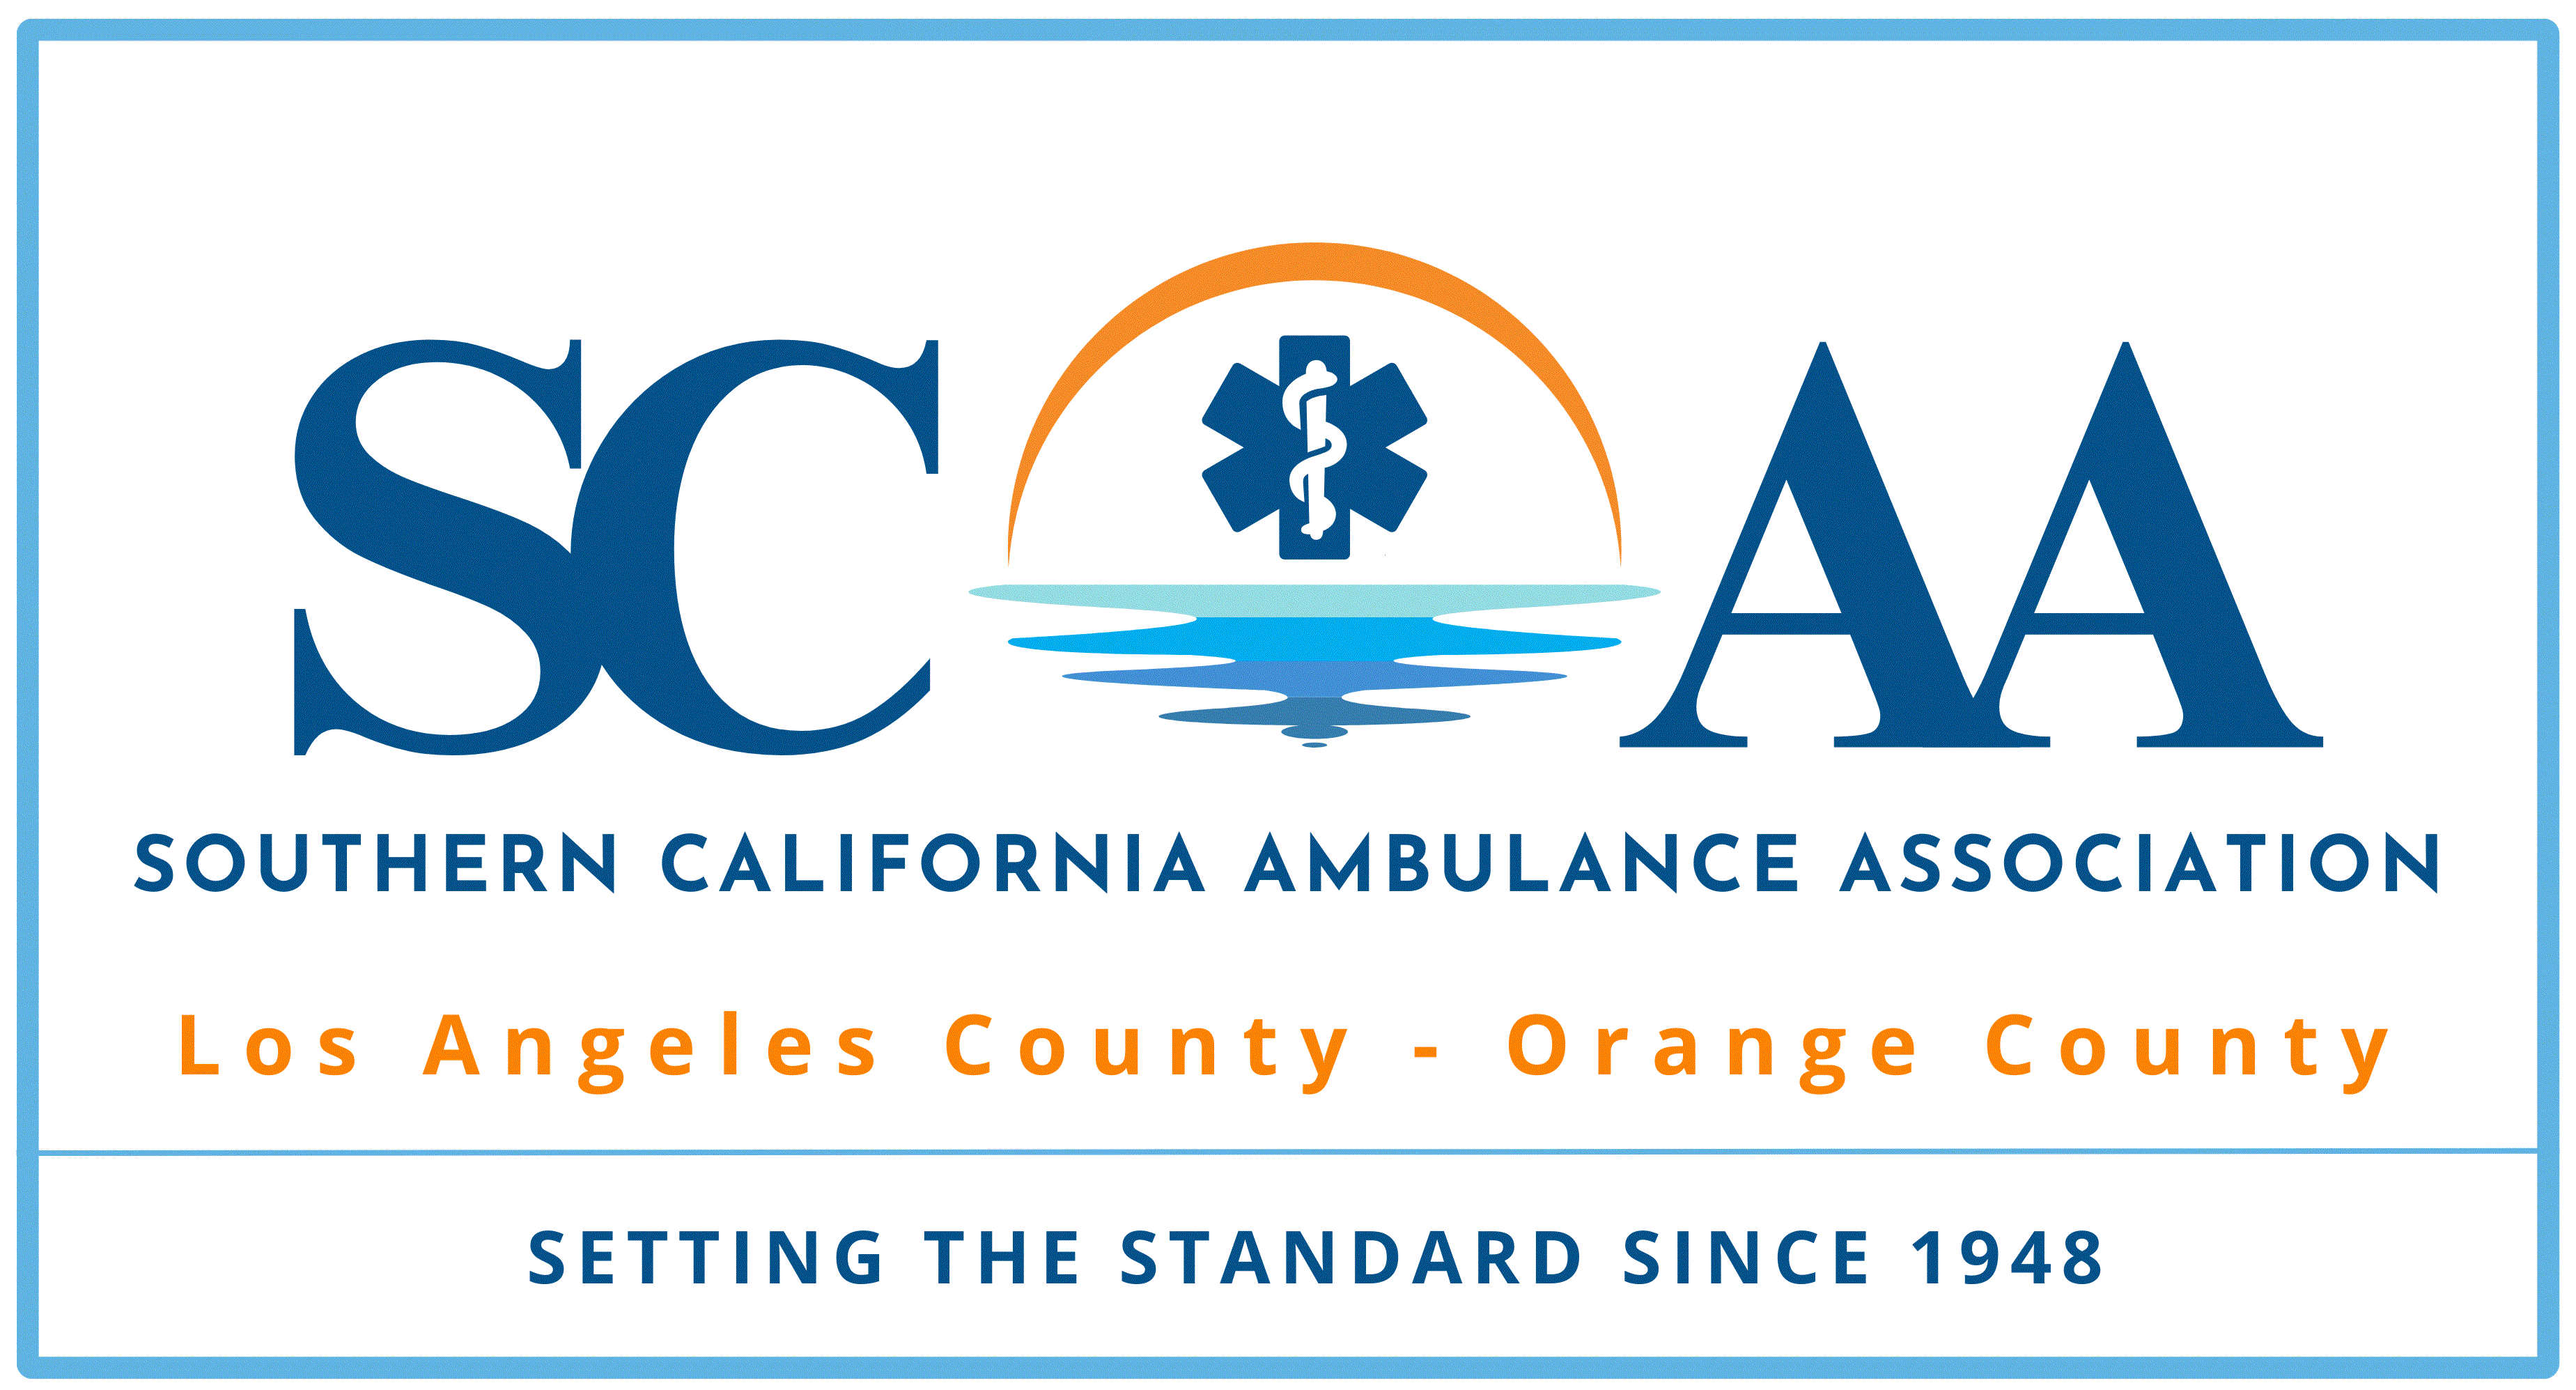 Southern California Ambulance Association